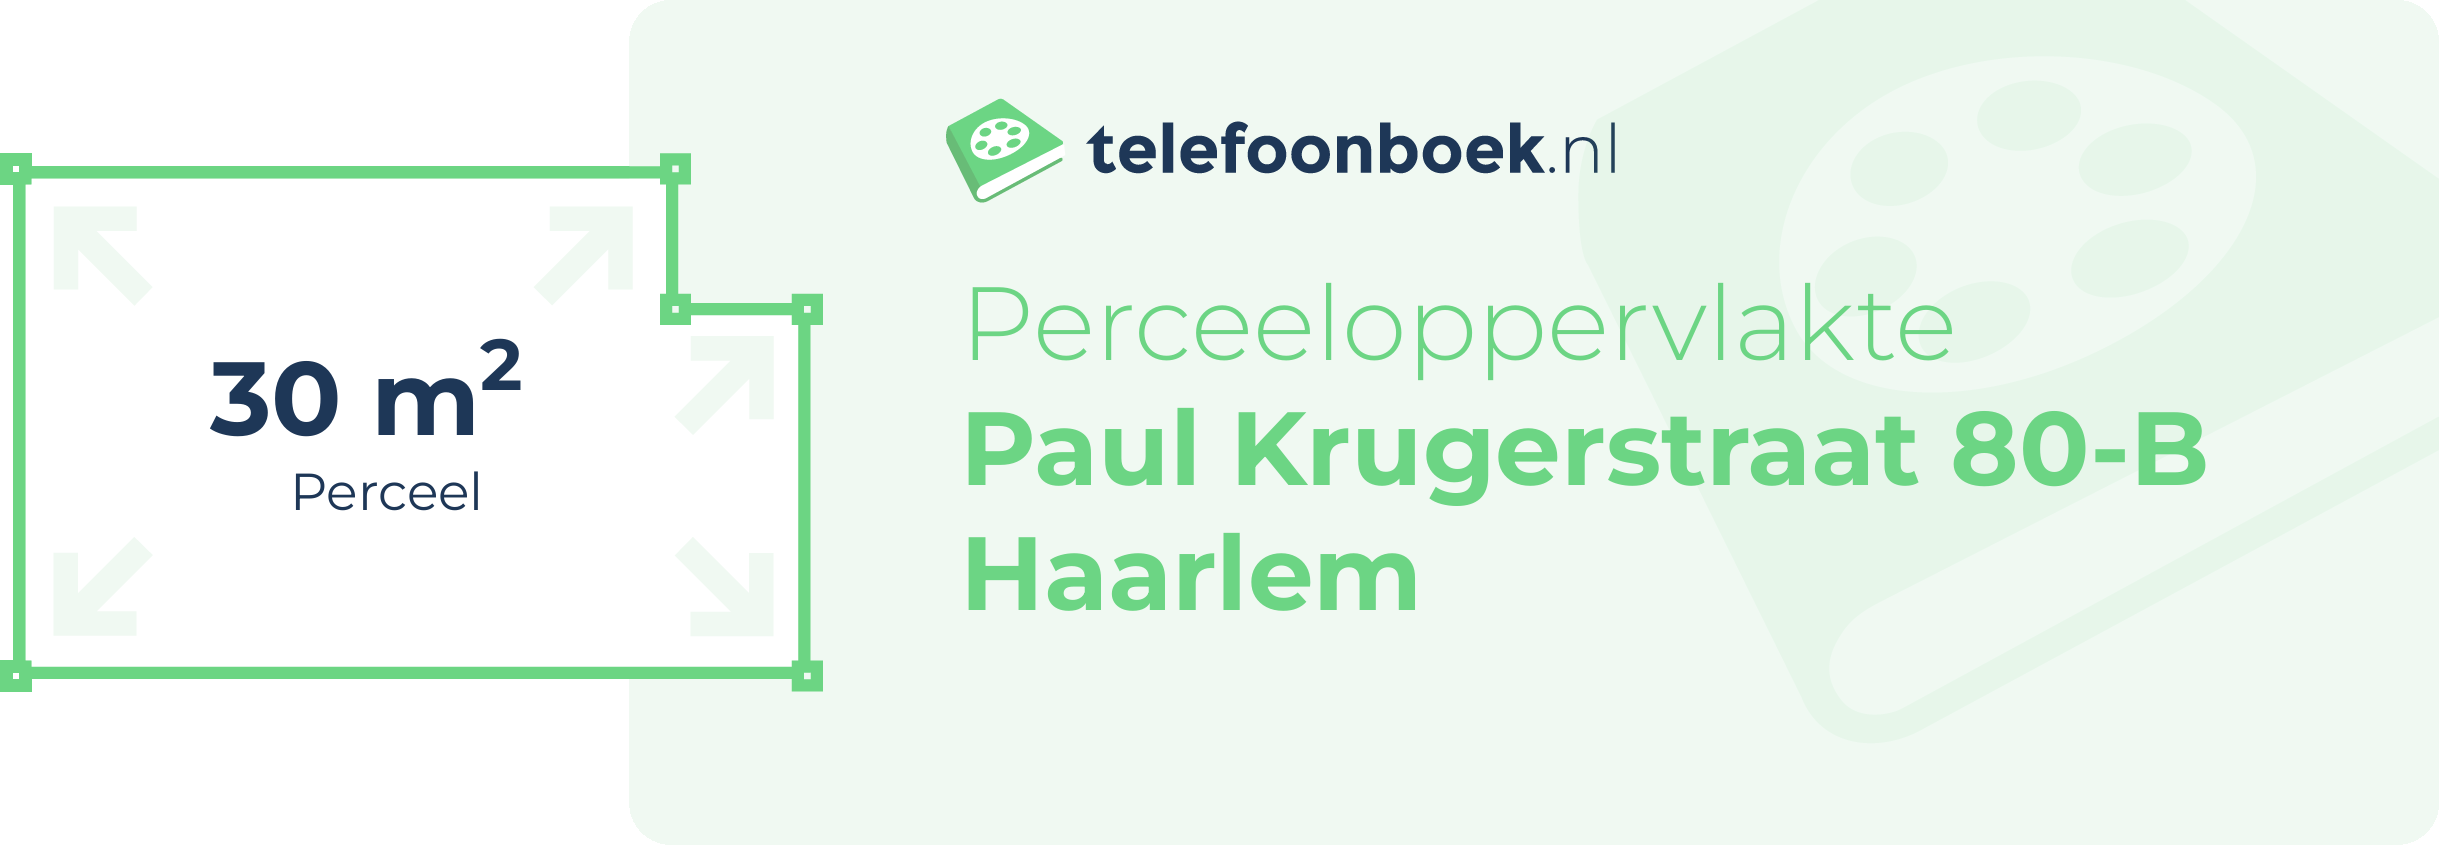 Perceeloppervlakte Paul Krugerstraat 80-B Haarlem